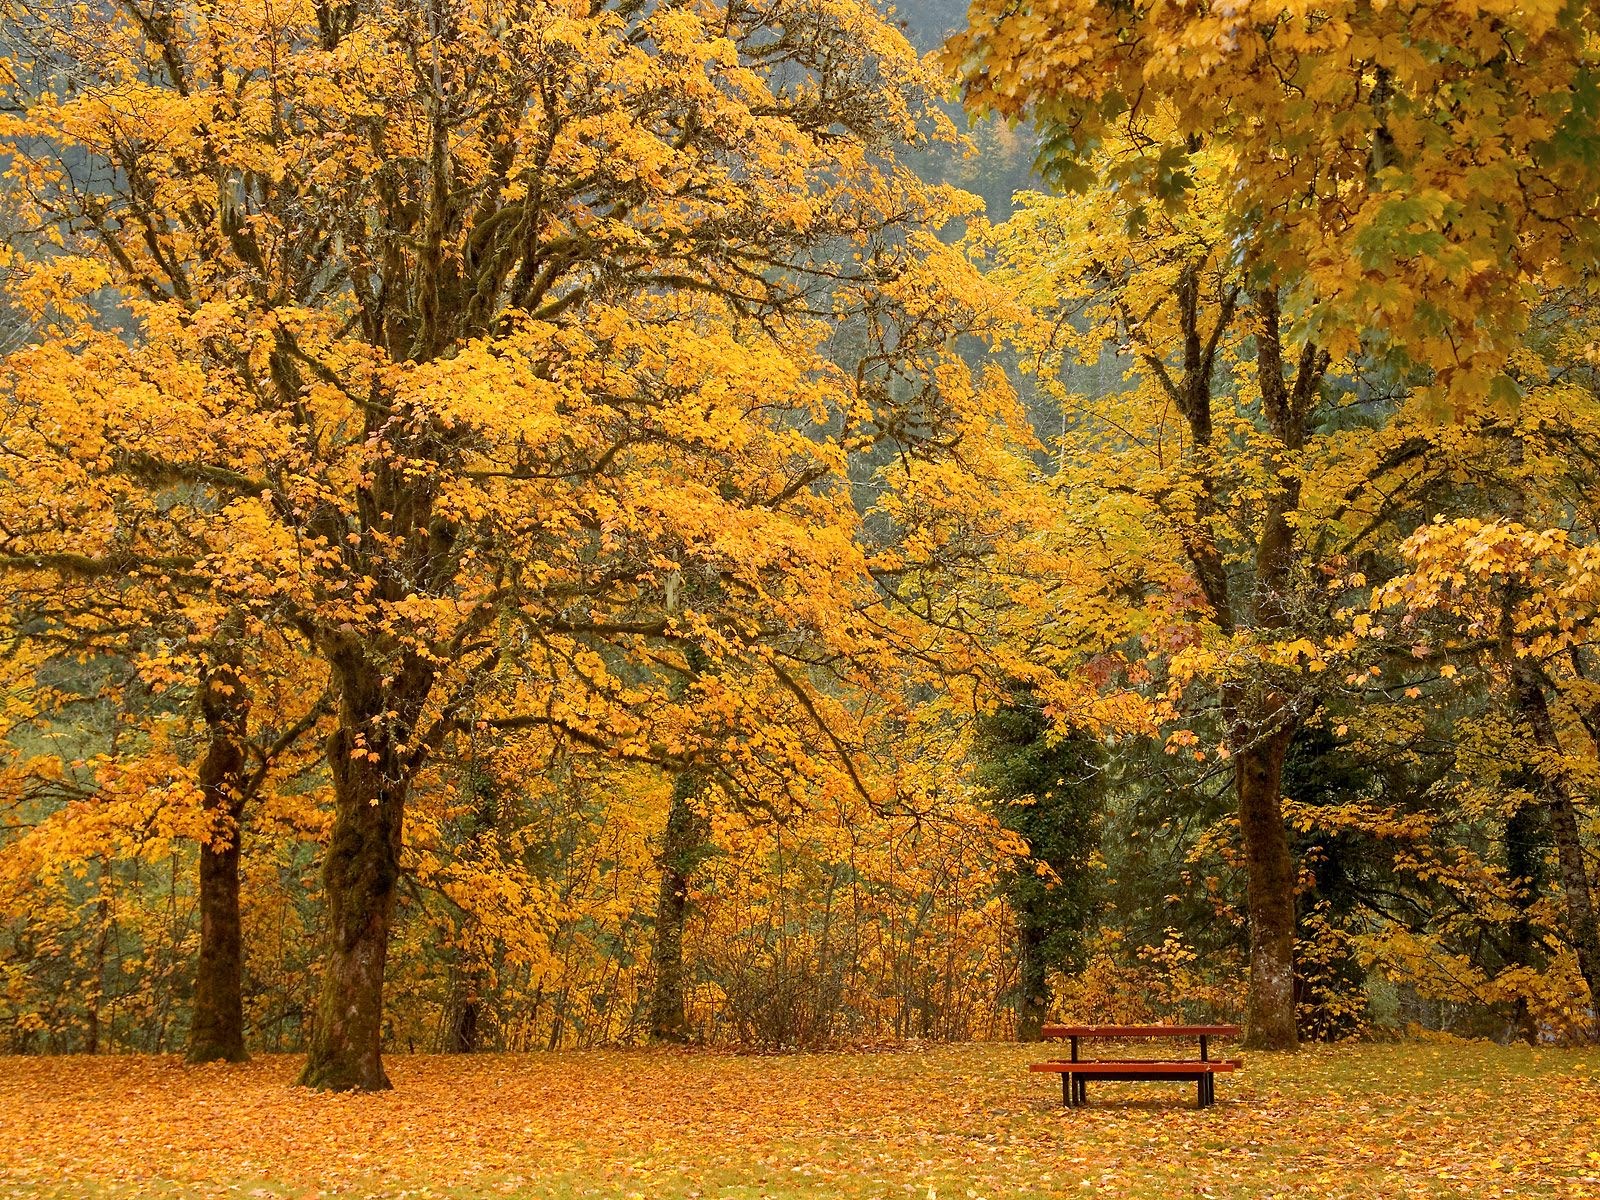 https://blogger.googleusercontent.com/img/b/R29vZ2xl/AVvXsEgsbuH7iNi_cvnWE0We0wYynECQsRVHkxHO-KG2cczM6DRmna1758Nx0cCx1pUgqiiUurQEZcEqASAFioq1INGVeJDi0MkbWWC2LKKoPKgNDxWl8OMkwDrxebMFMtkfDzbyLH05jtdJgGg/s1600/Beautiful-Tress-Autumn-Nature-HD-Wallpaper.jpg